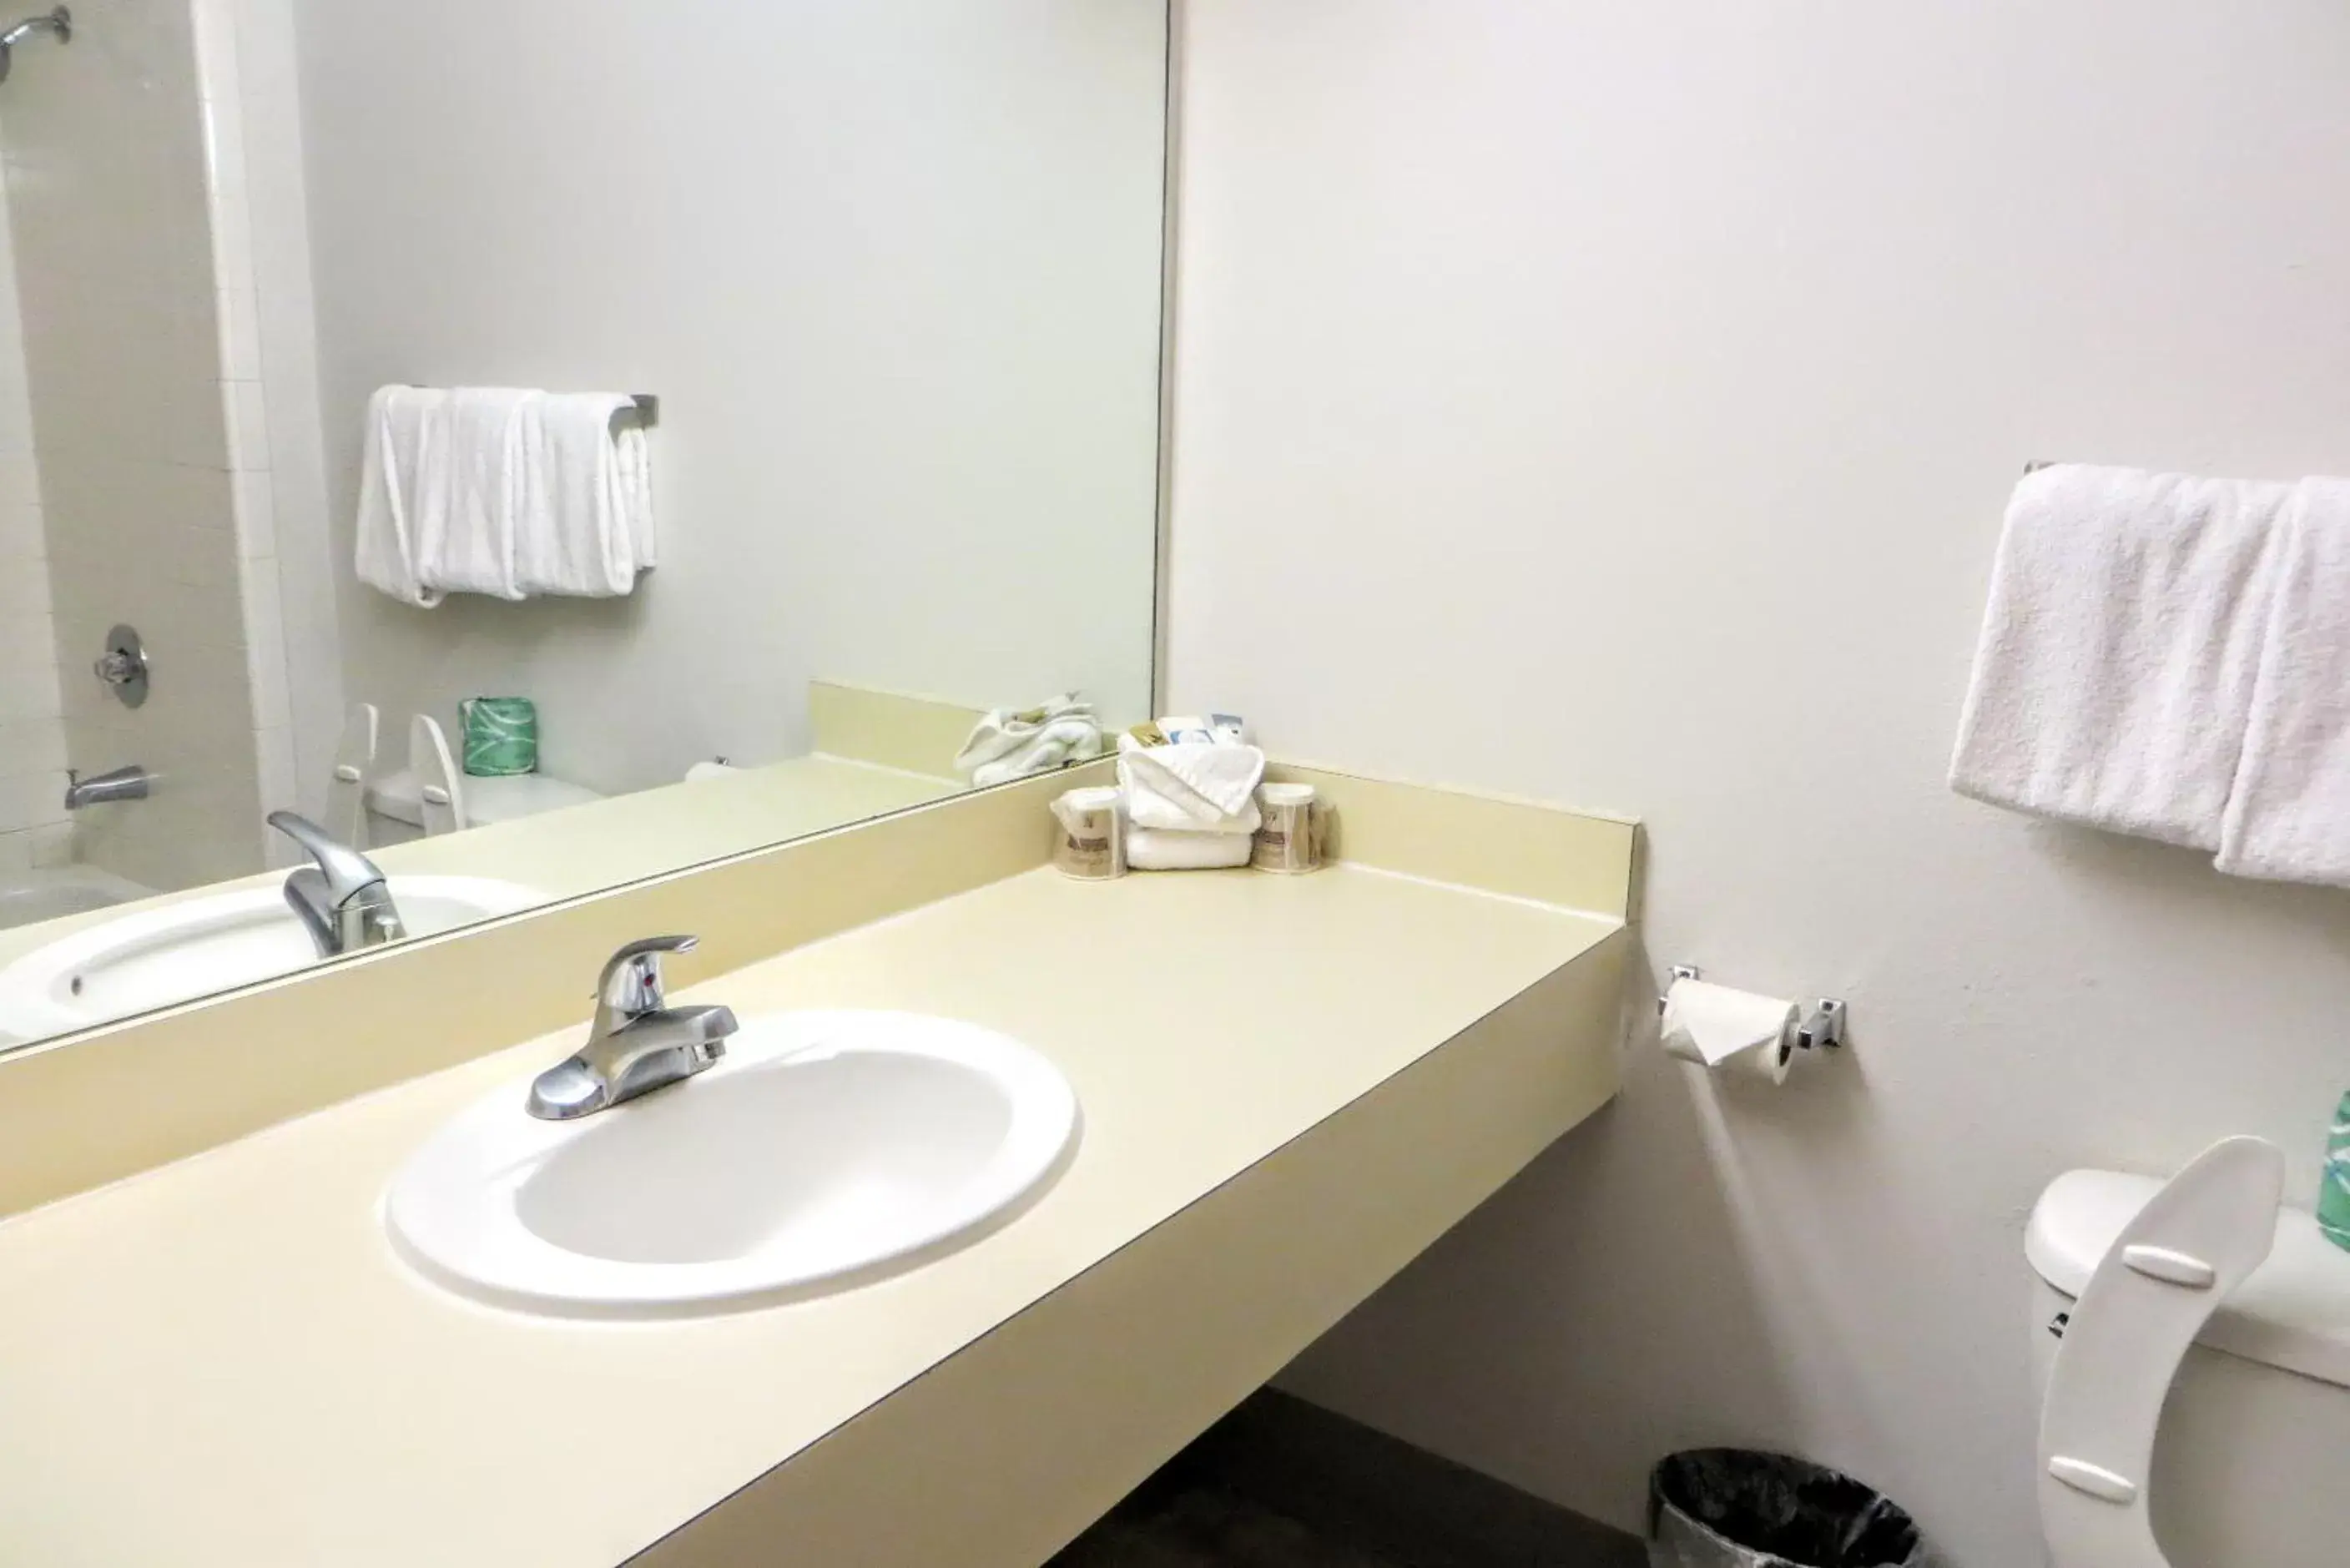 Bathroom in Guest House Inn Medical District near Texas Tech Univ